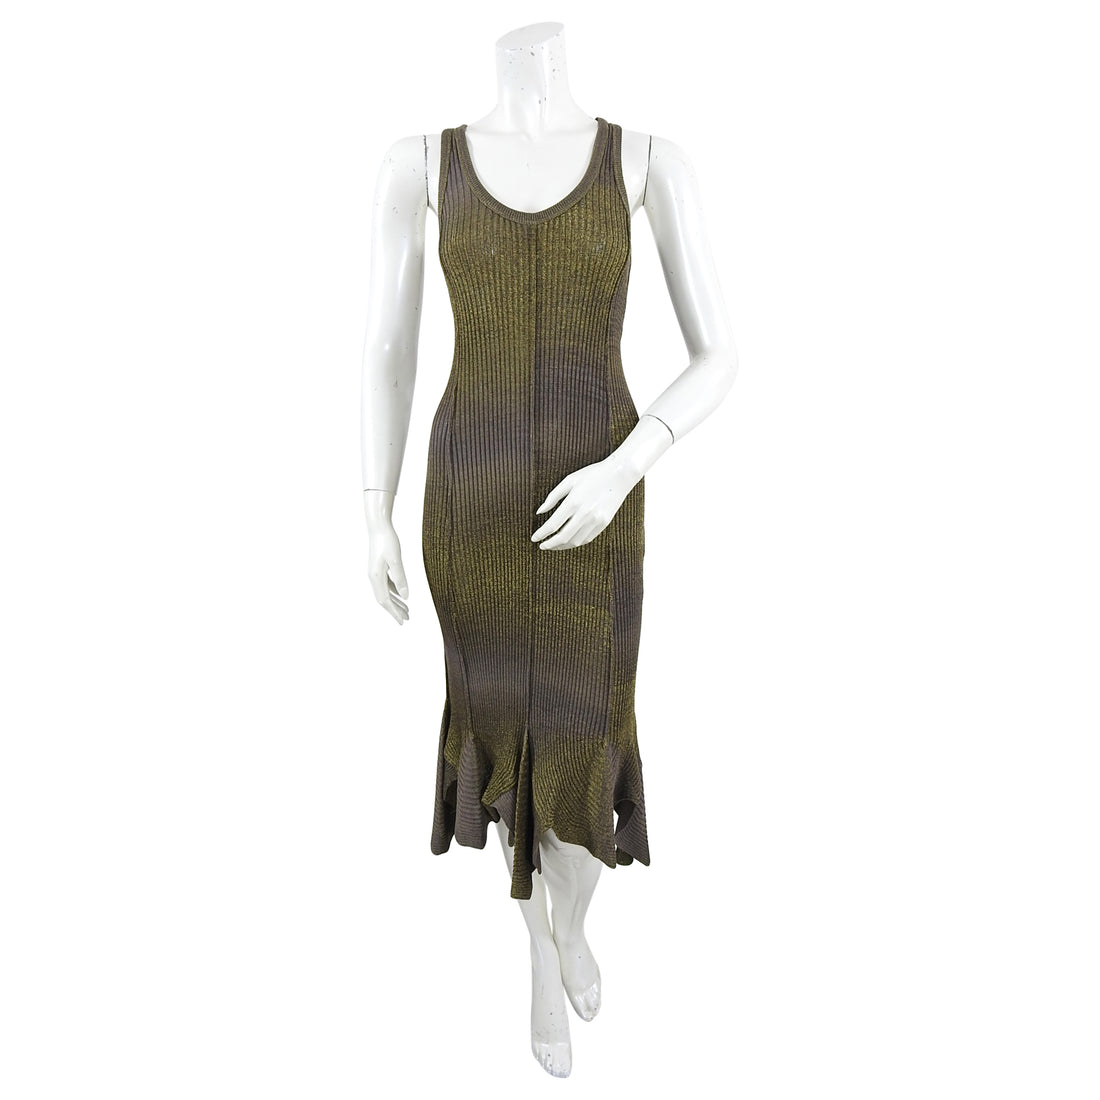 Jean Paul Gaultier Bronze Metallic Knit Tank Dress - M / 6/8